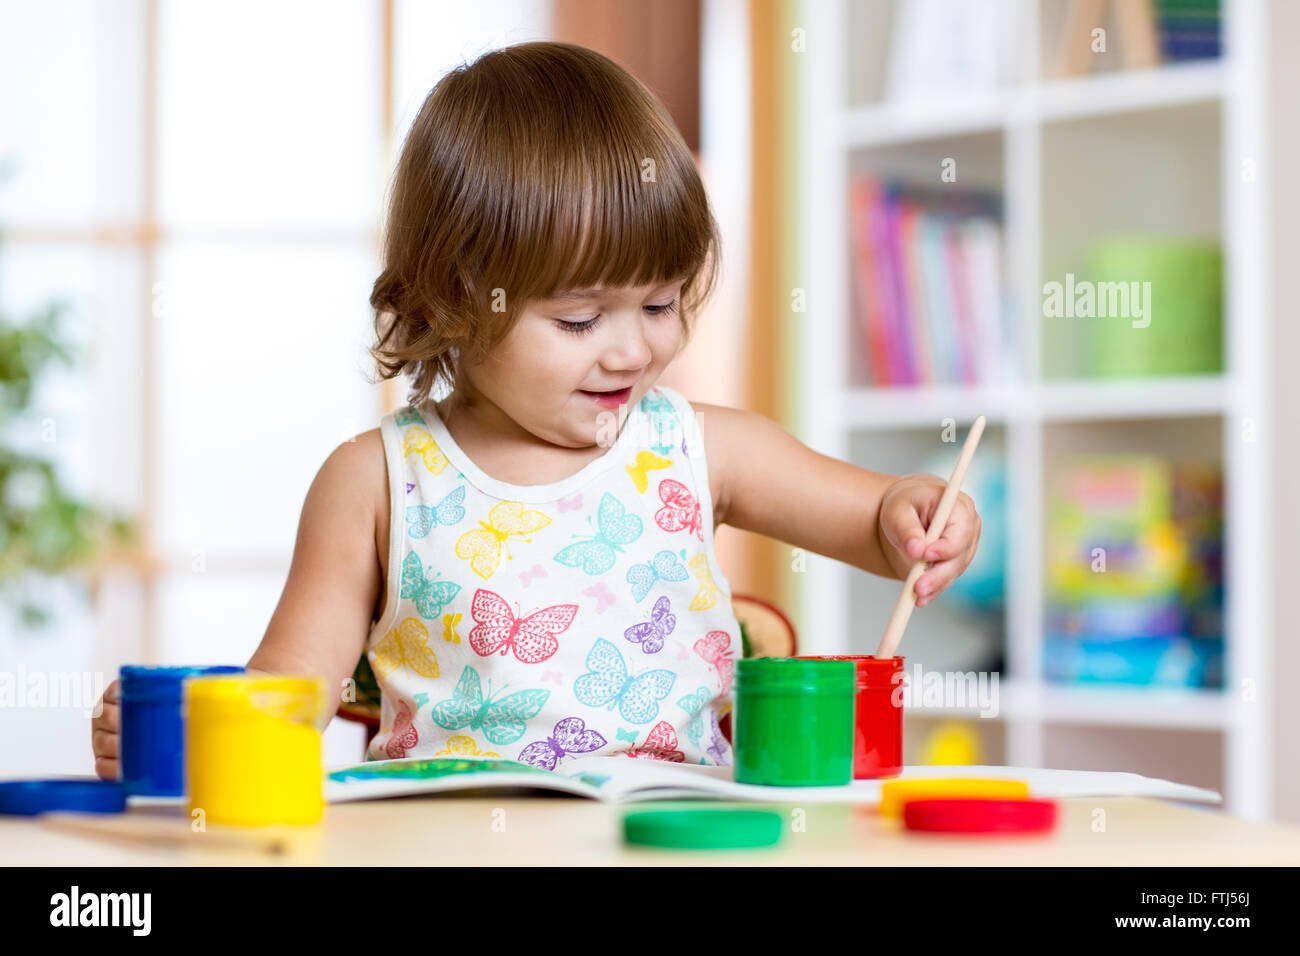 Child painting in kindergarten or playschool Stock Photo